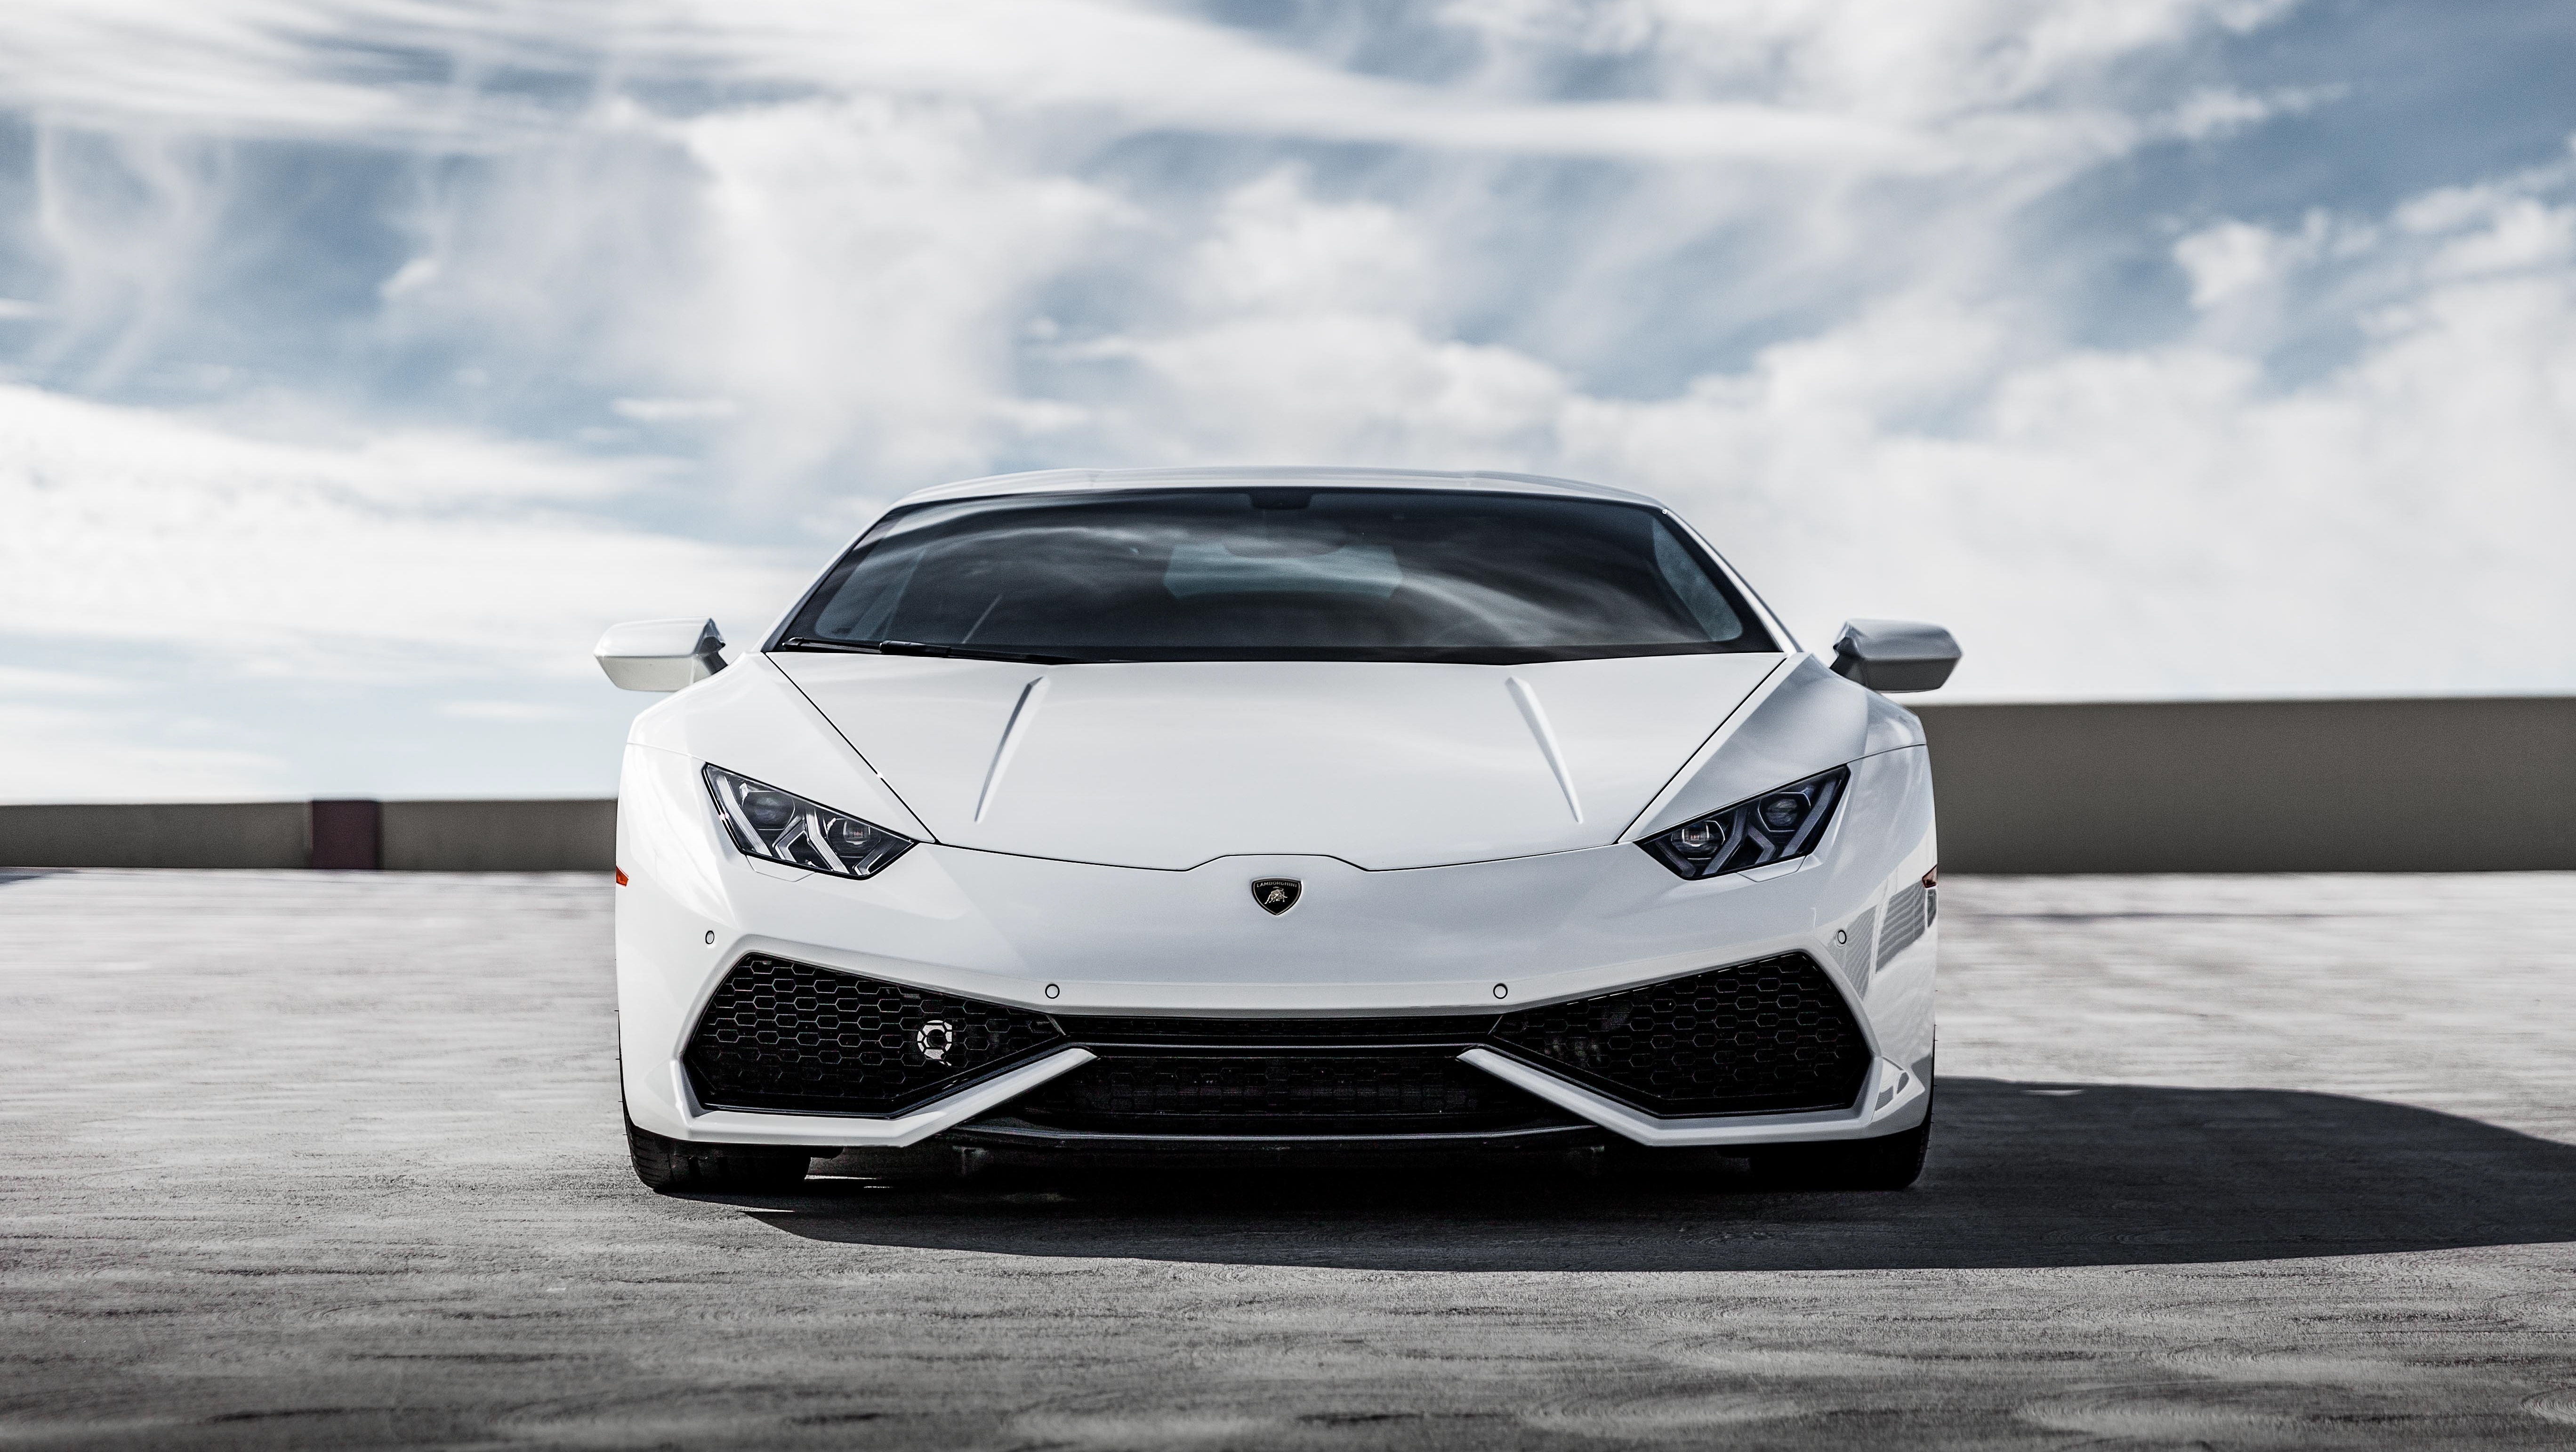 Download mobile wallpaper Lamborghini, Car, Supercar, Vehicles, White Car, Lamborghini Huracán for free.